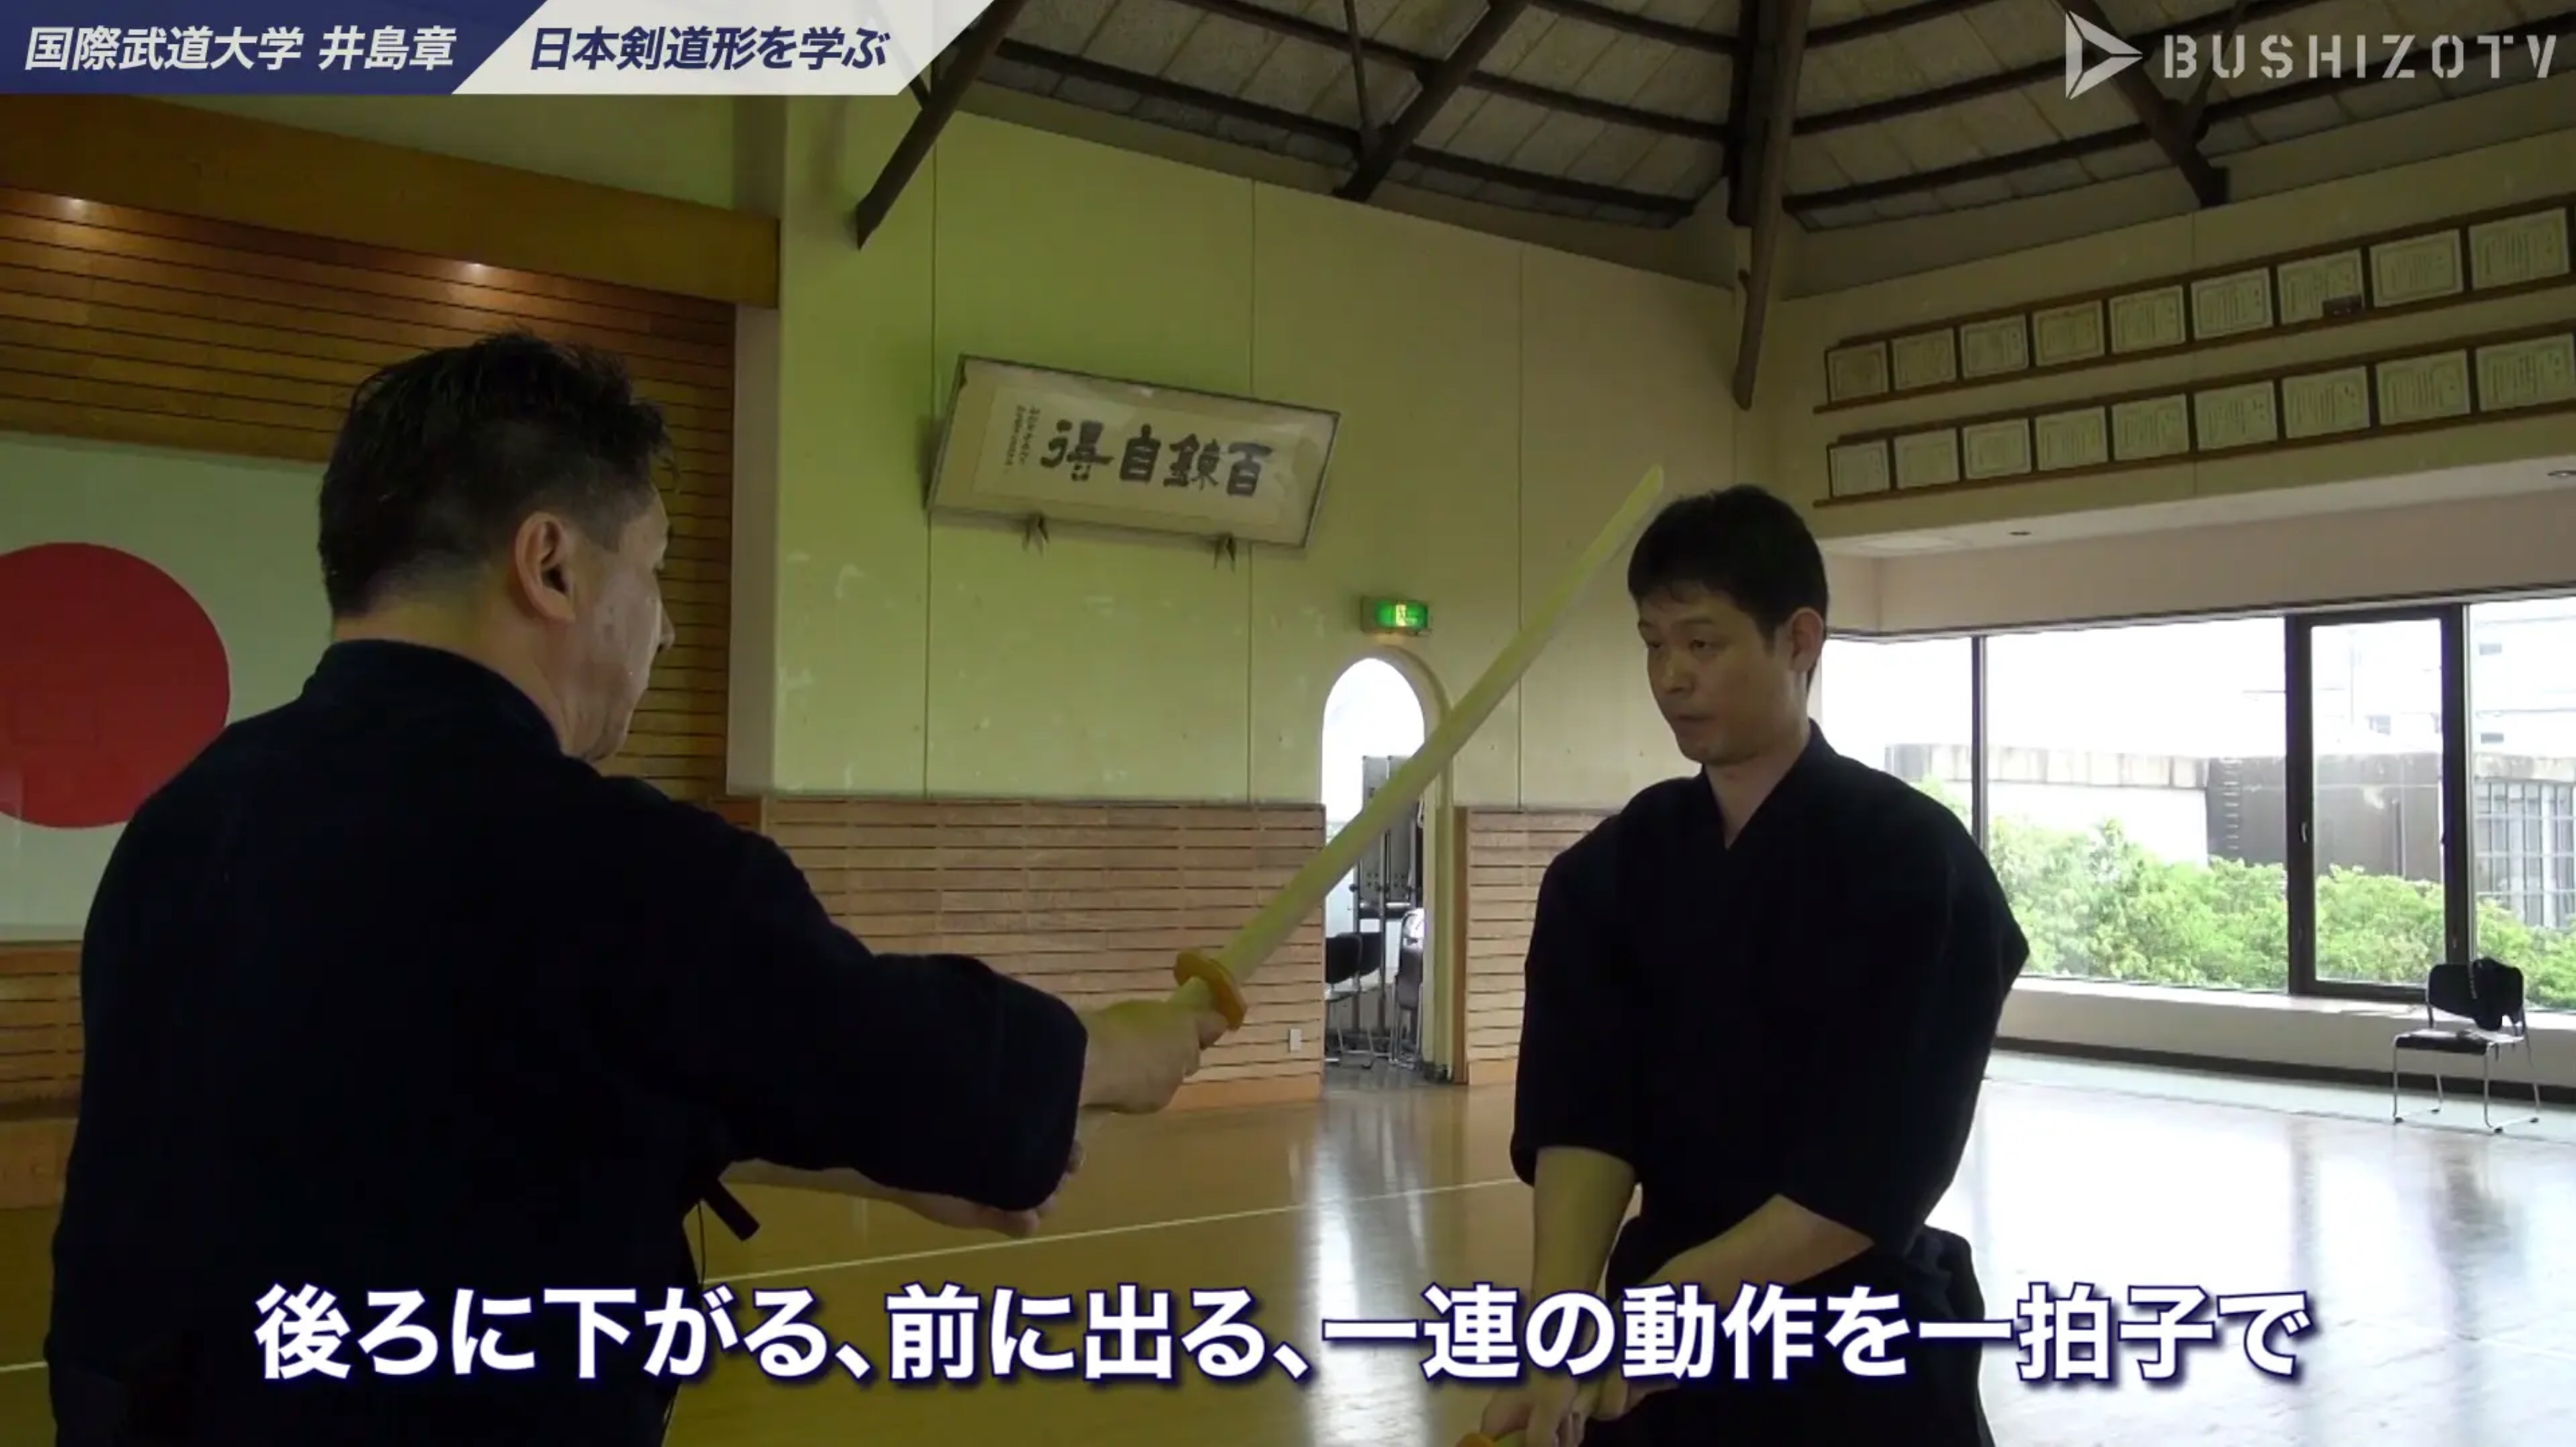 教士八段 井島章 日本剣道形の指導 一本目 Bushizo Tv